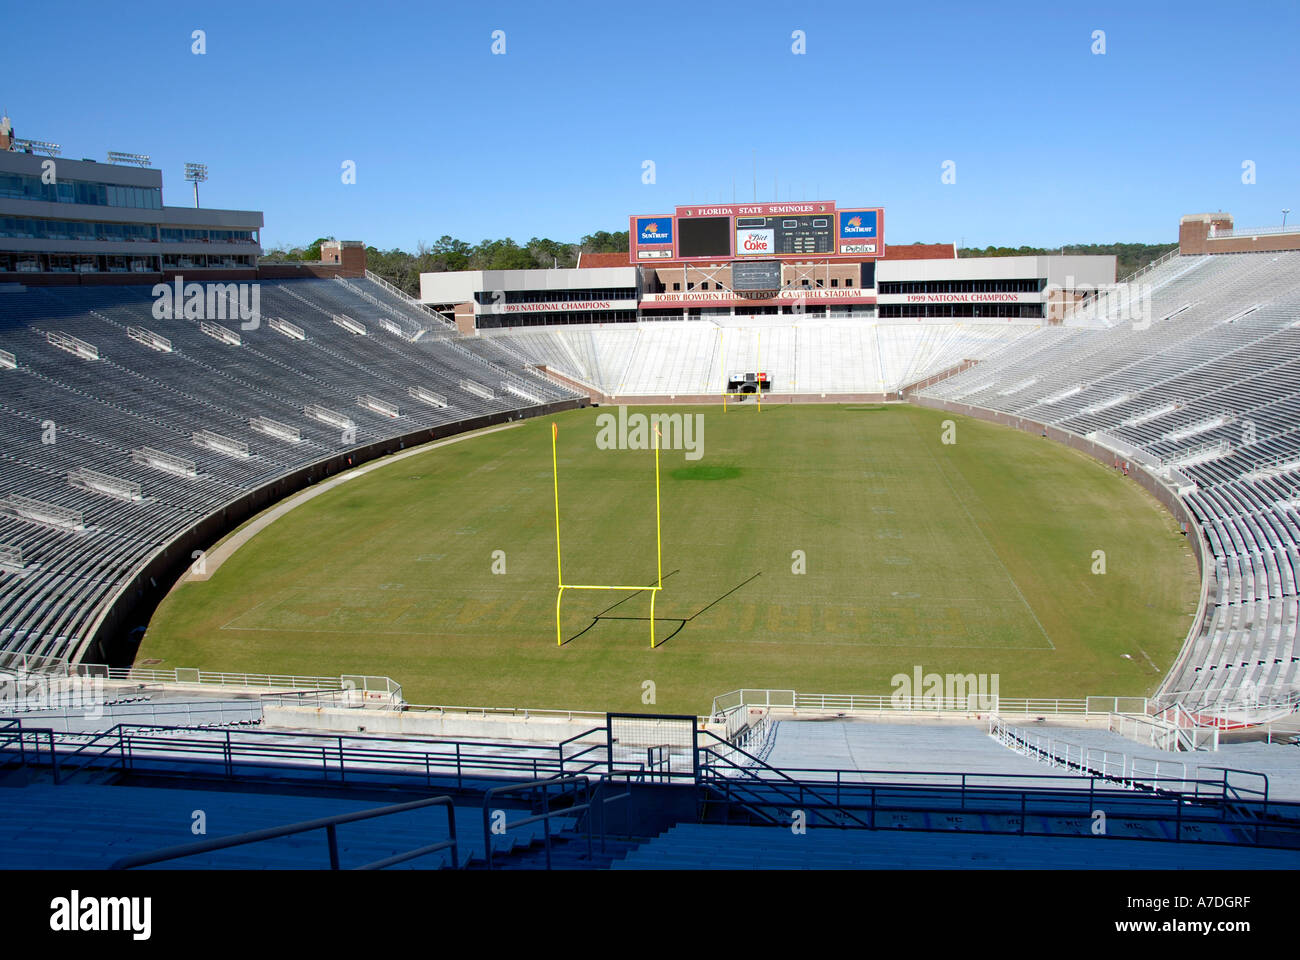 S Doak Campbell Football Stadium et centre d'information sur le campus de l'Université d'État de Floride Floride Tallahassee FL Seminoles Banque D'Images